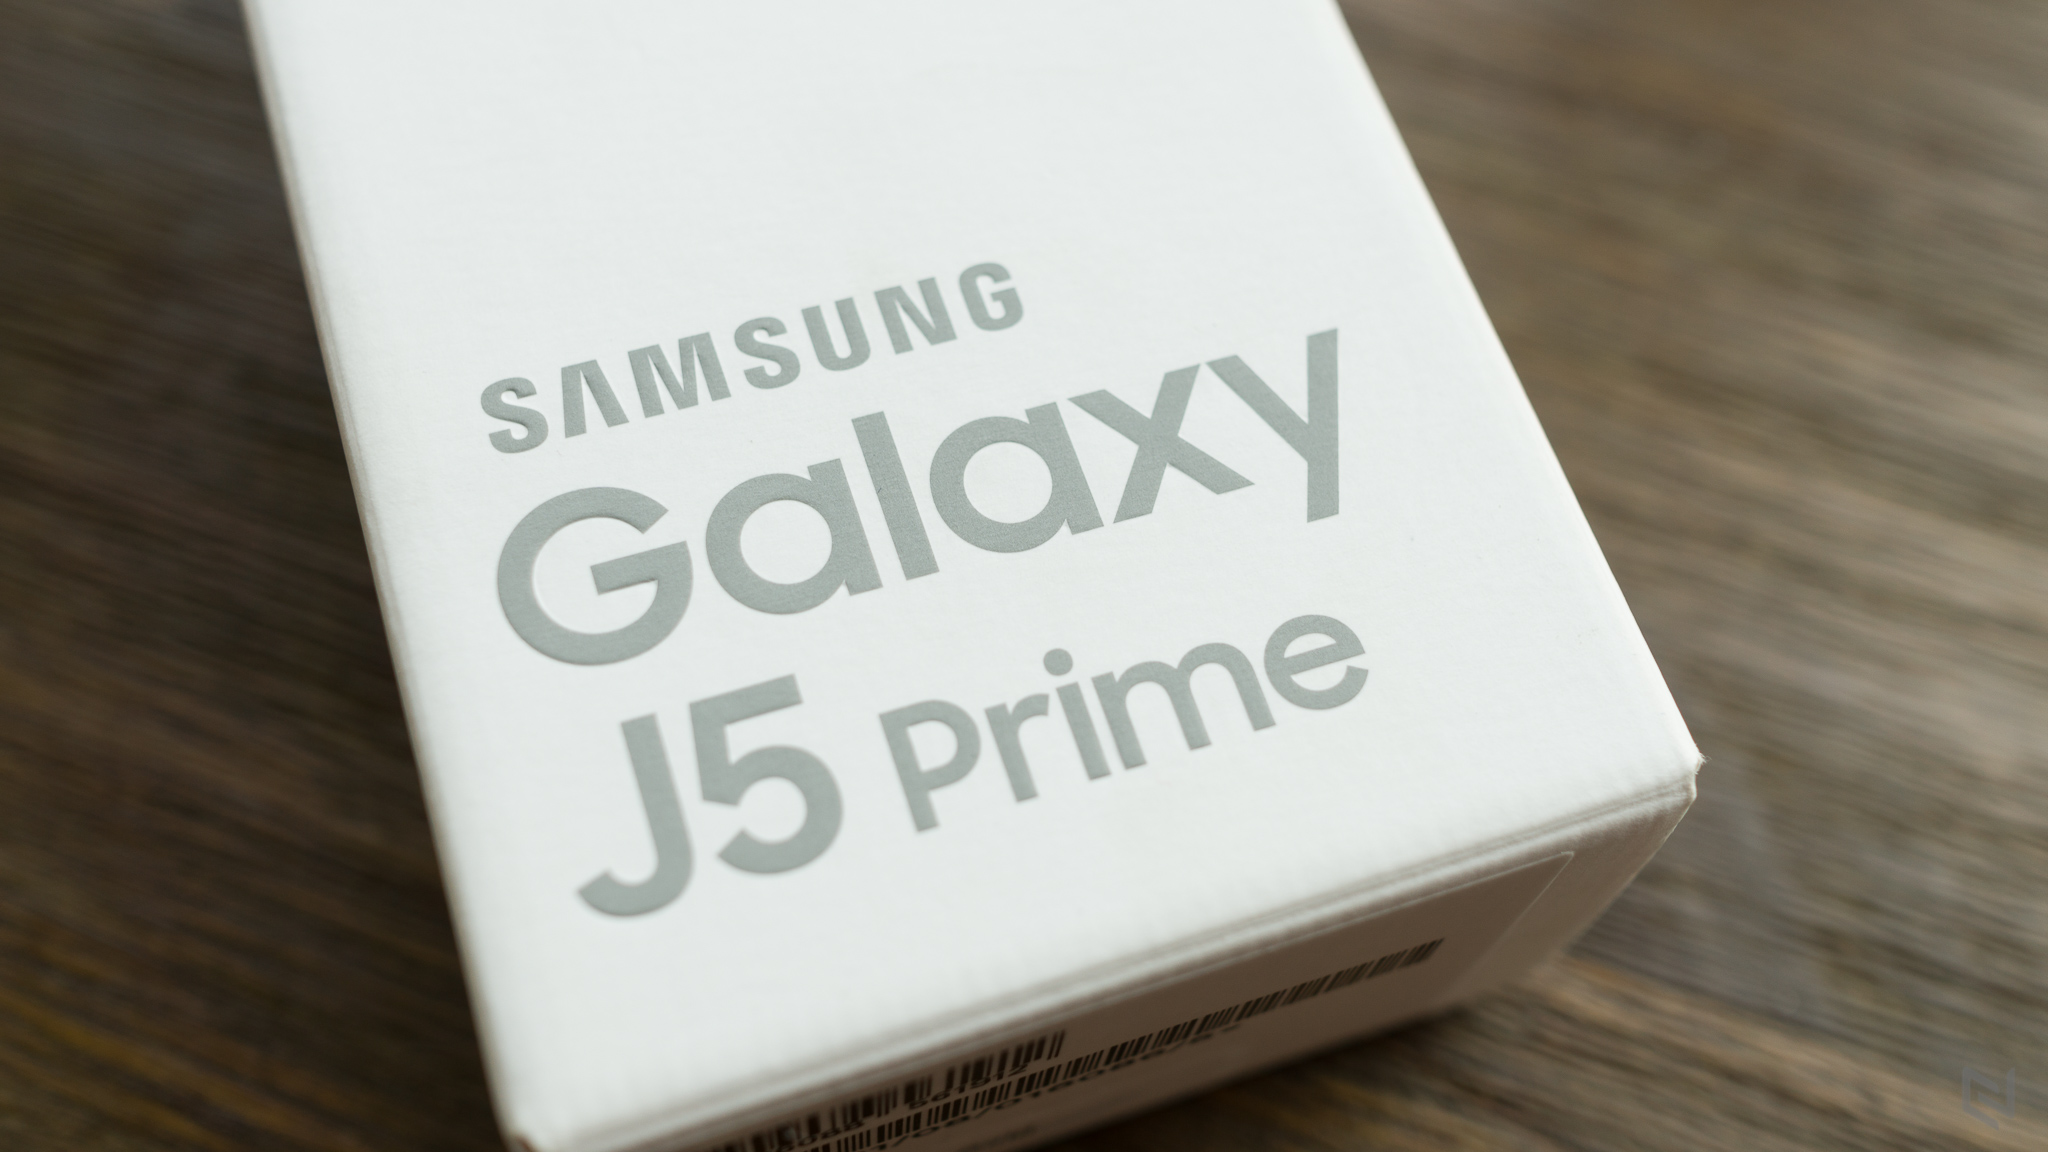 Hộp máy in chữ Galaxy J5 Prime